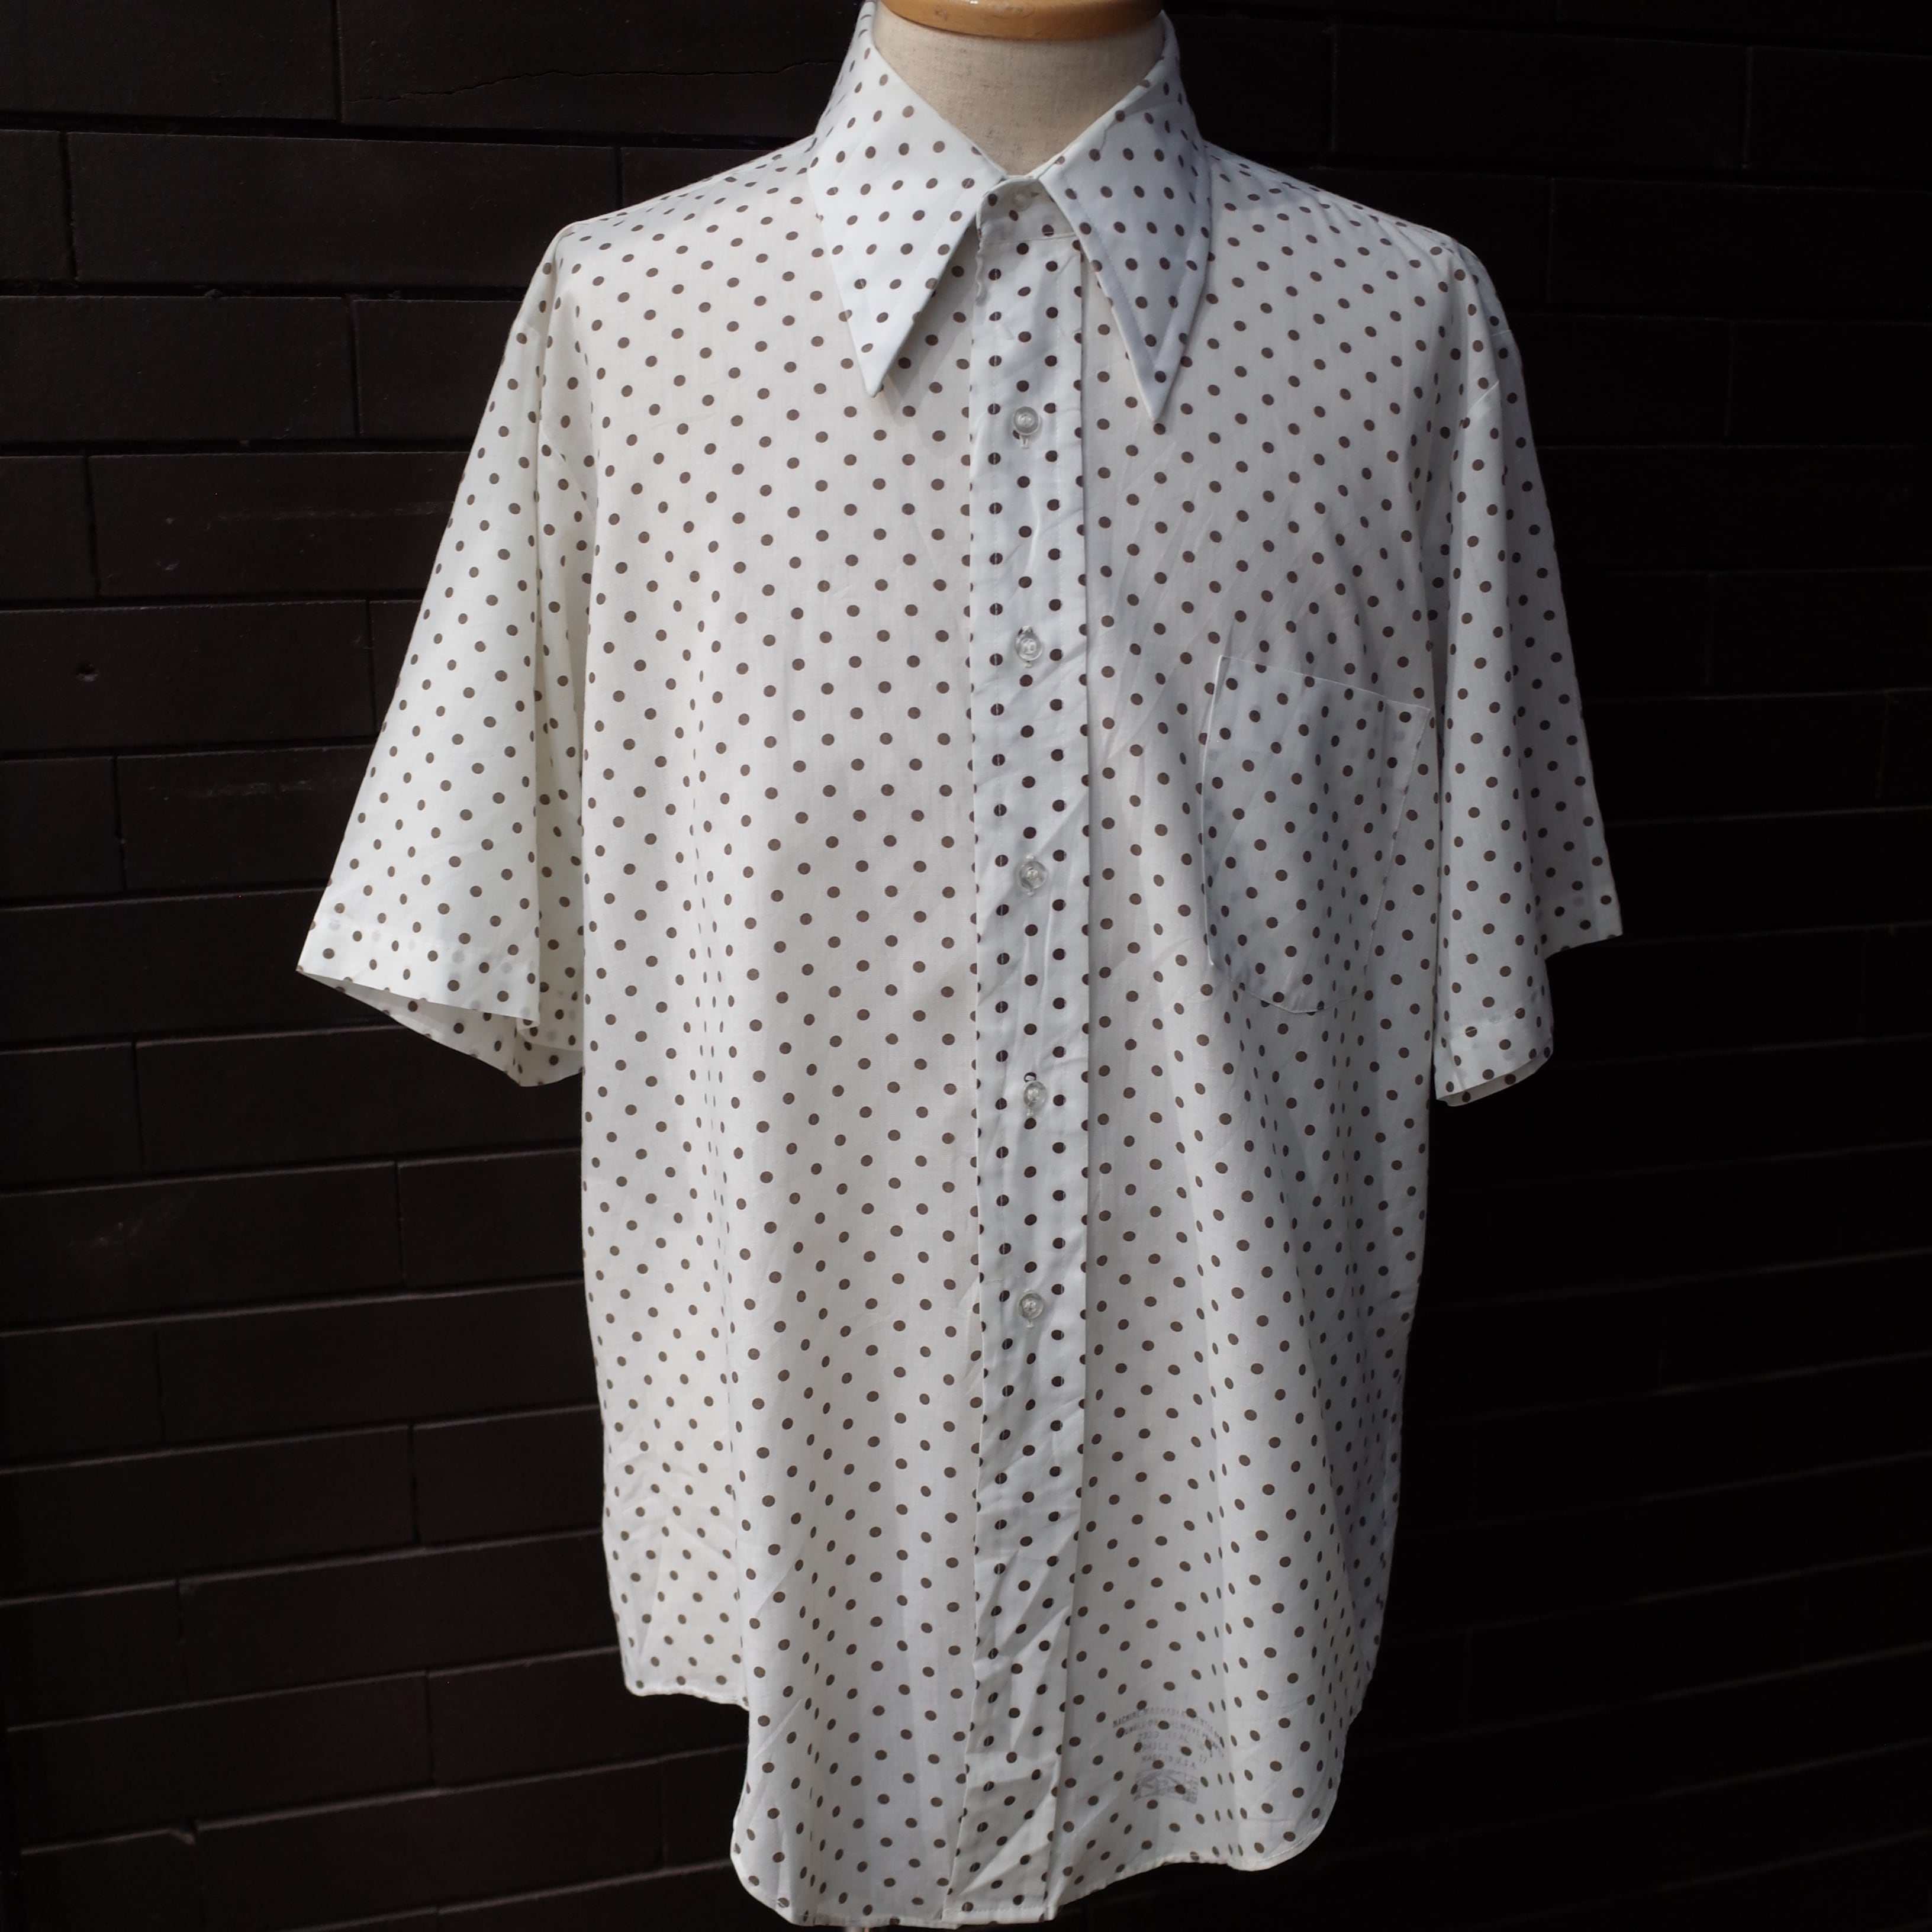 最新デザインの 70s ヴィンテージシャツ ドット柄 水玉 衿芯